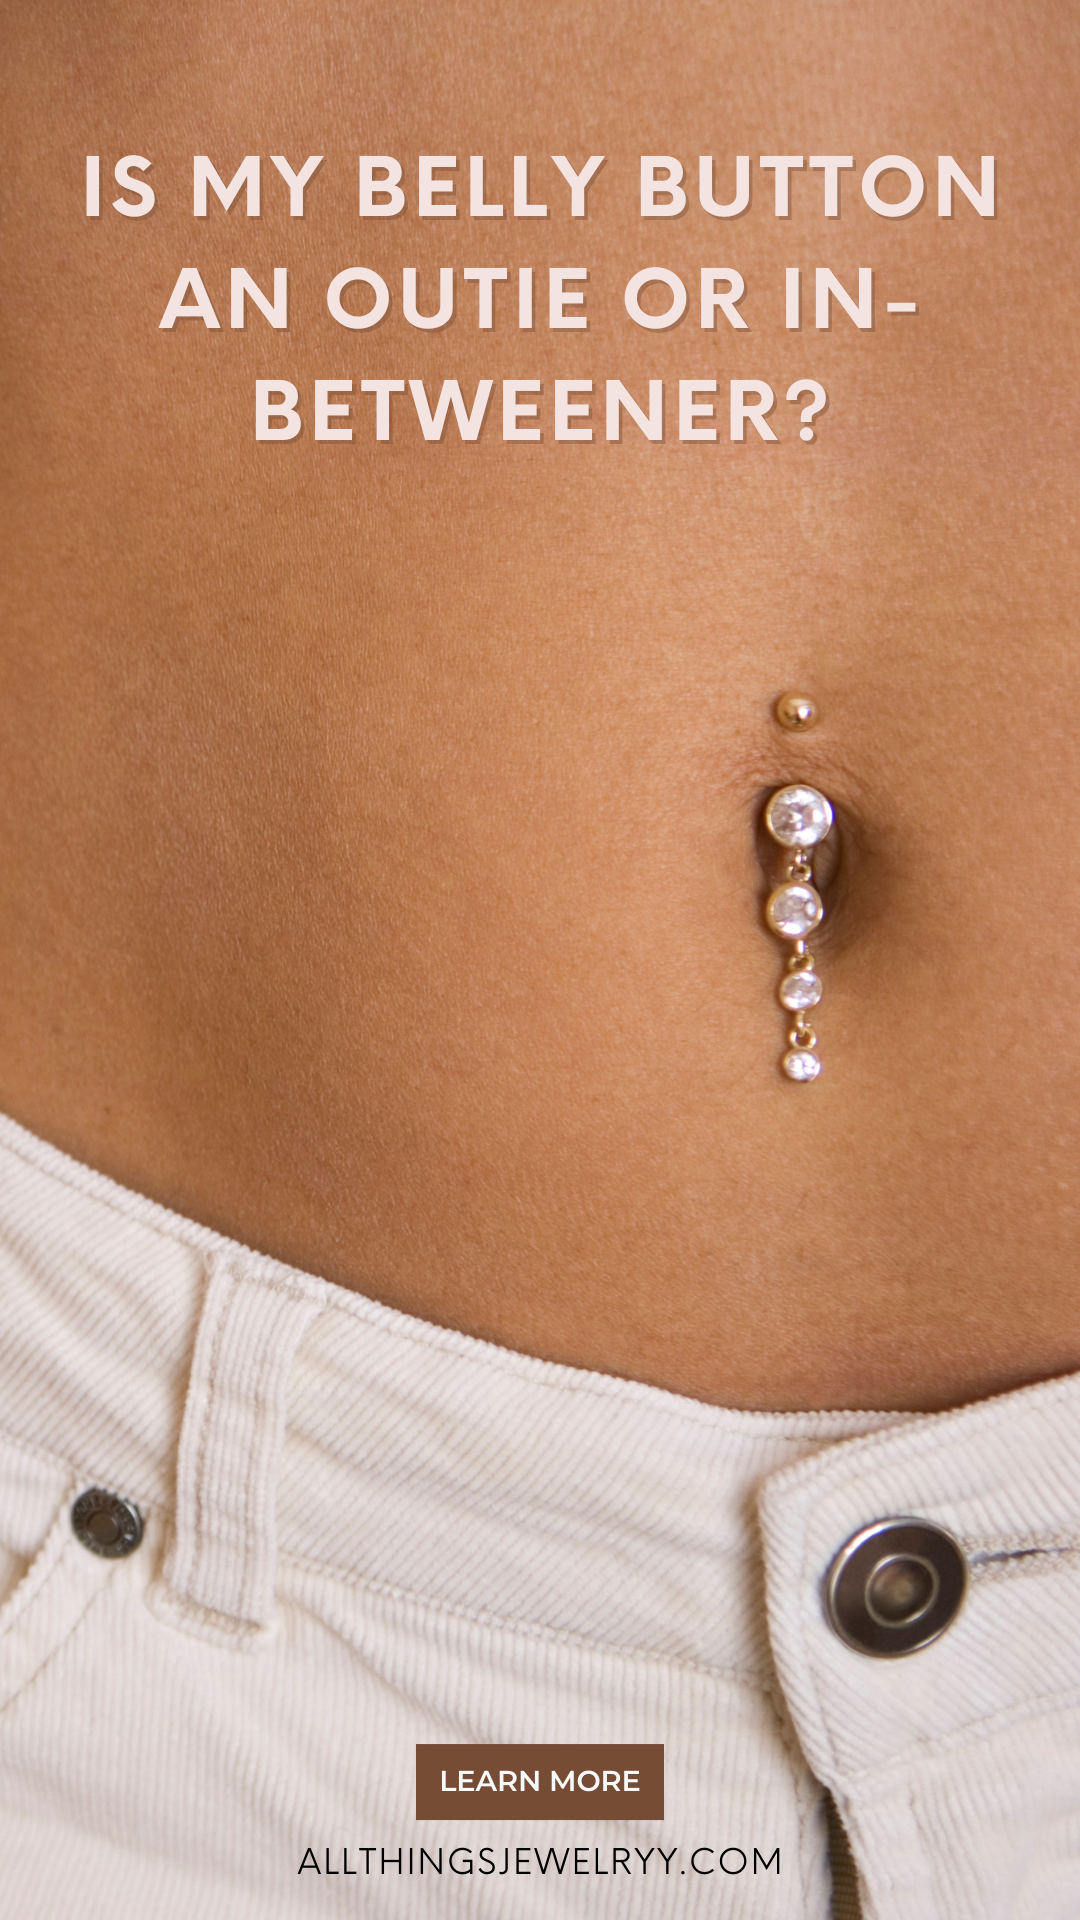 cil enriquez recommends inbetweenie belly button piercing pic